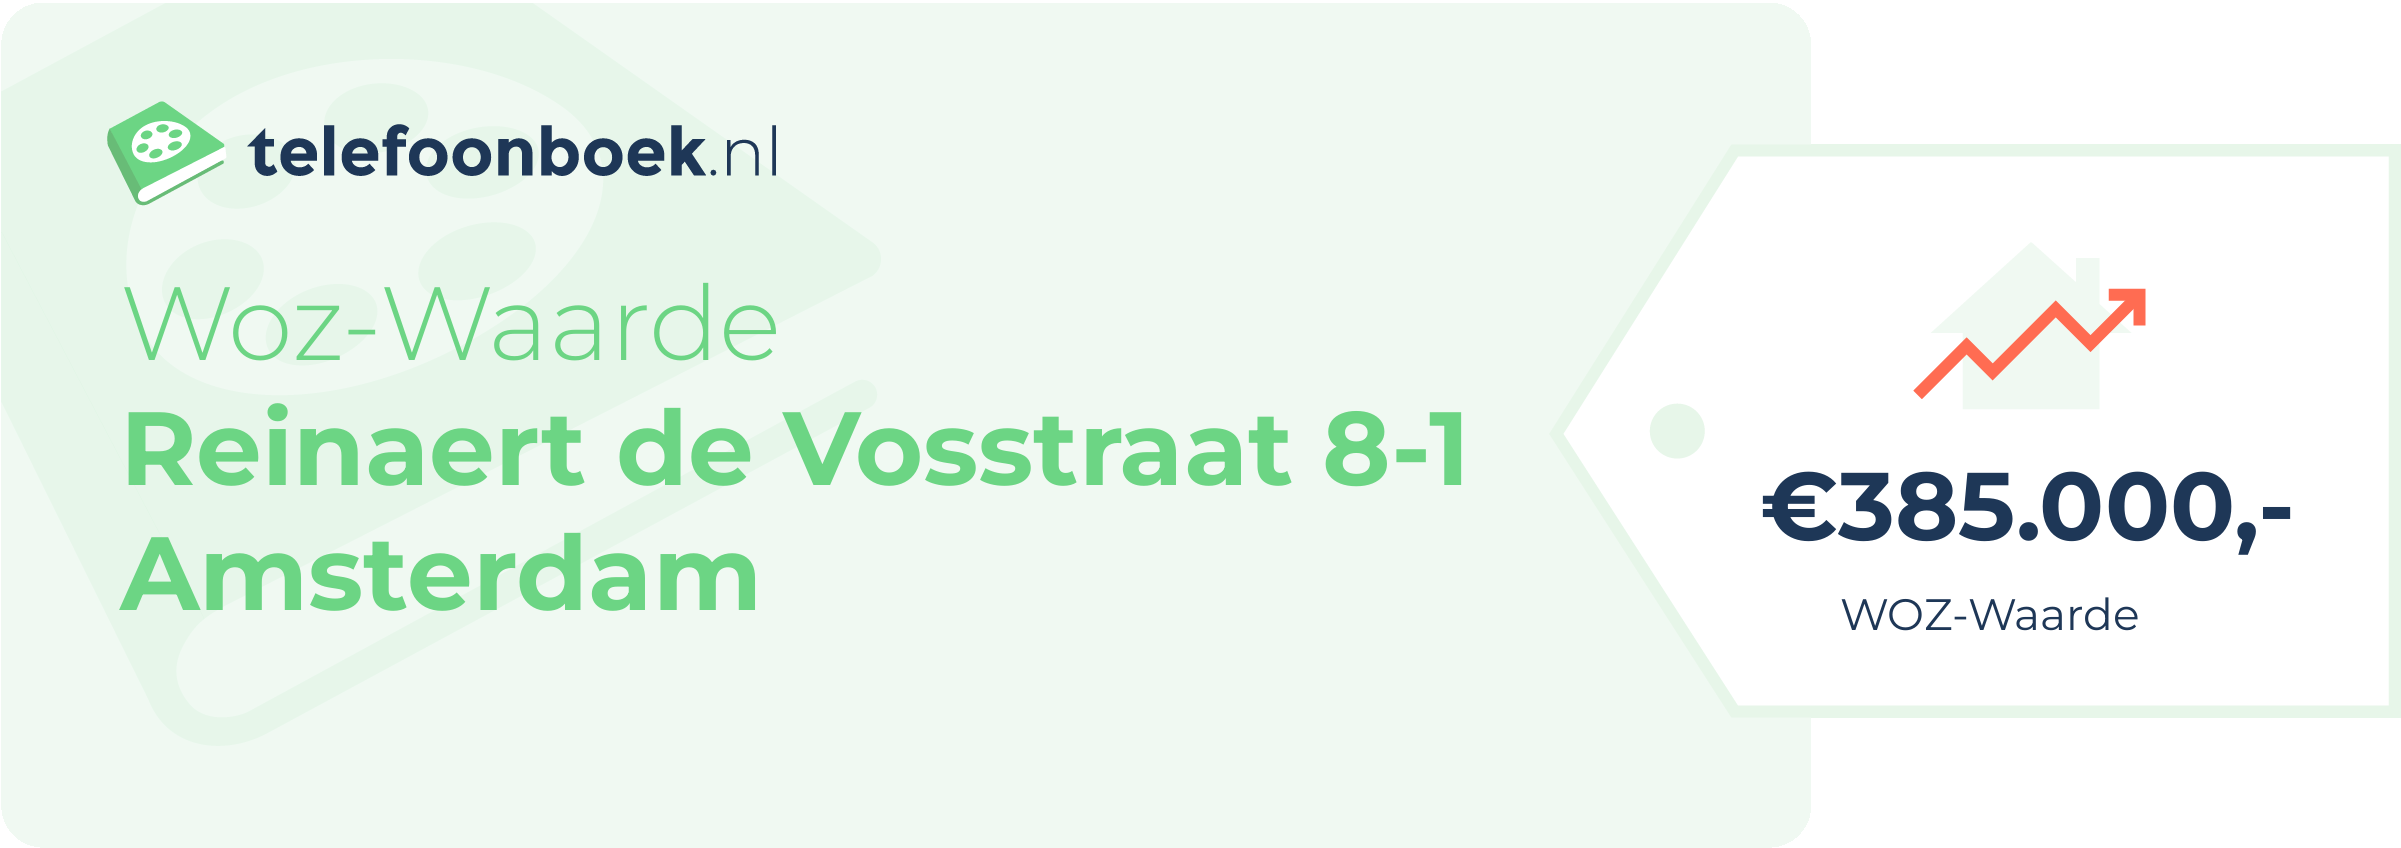 WOZ-waarde Reinaert De Vosstraat 8-1 Amsterdam